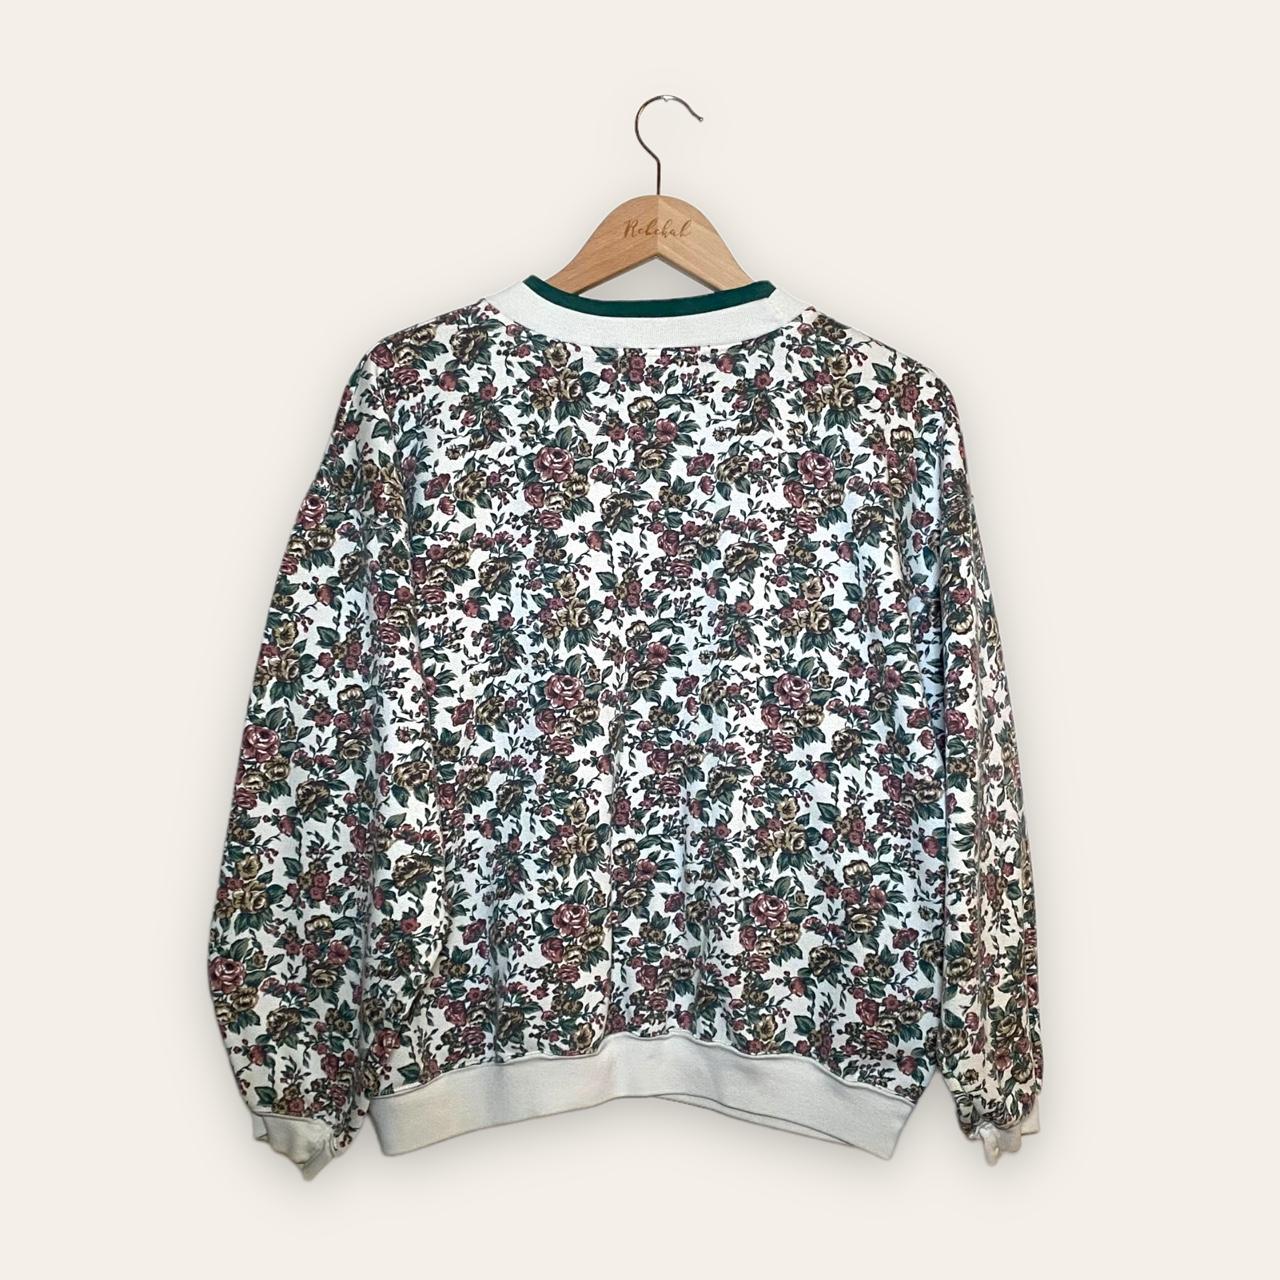 Product Image 4 - vintage floral sweatshirt crewneck grandma